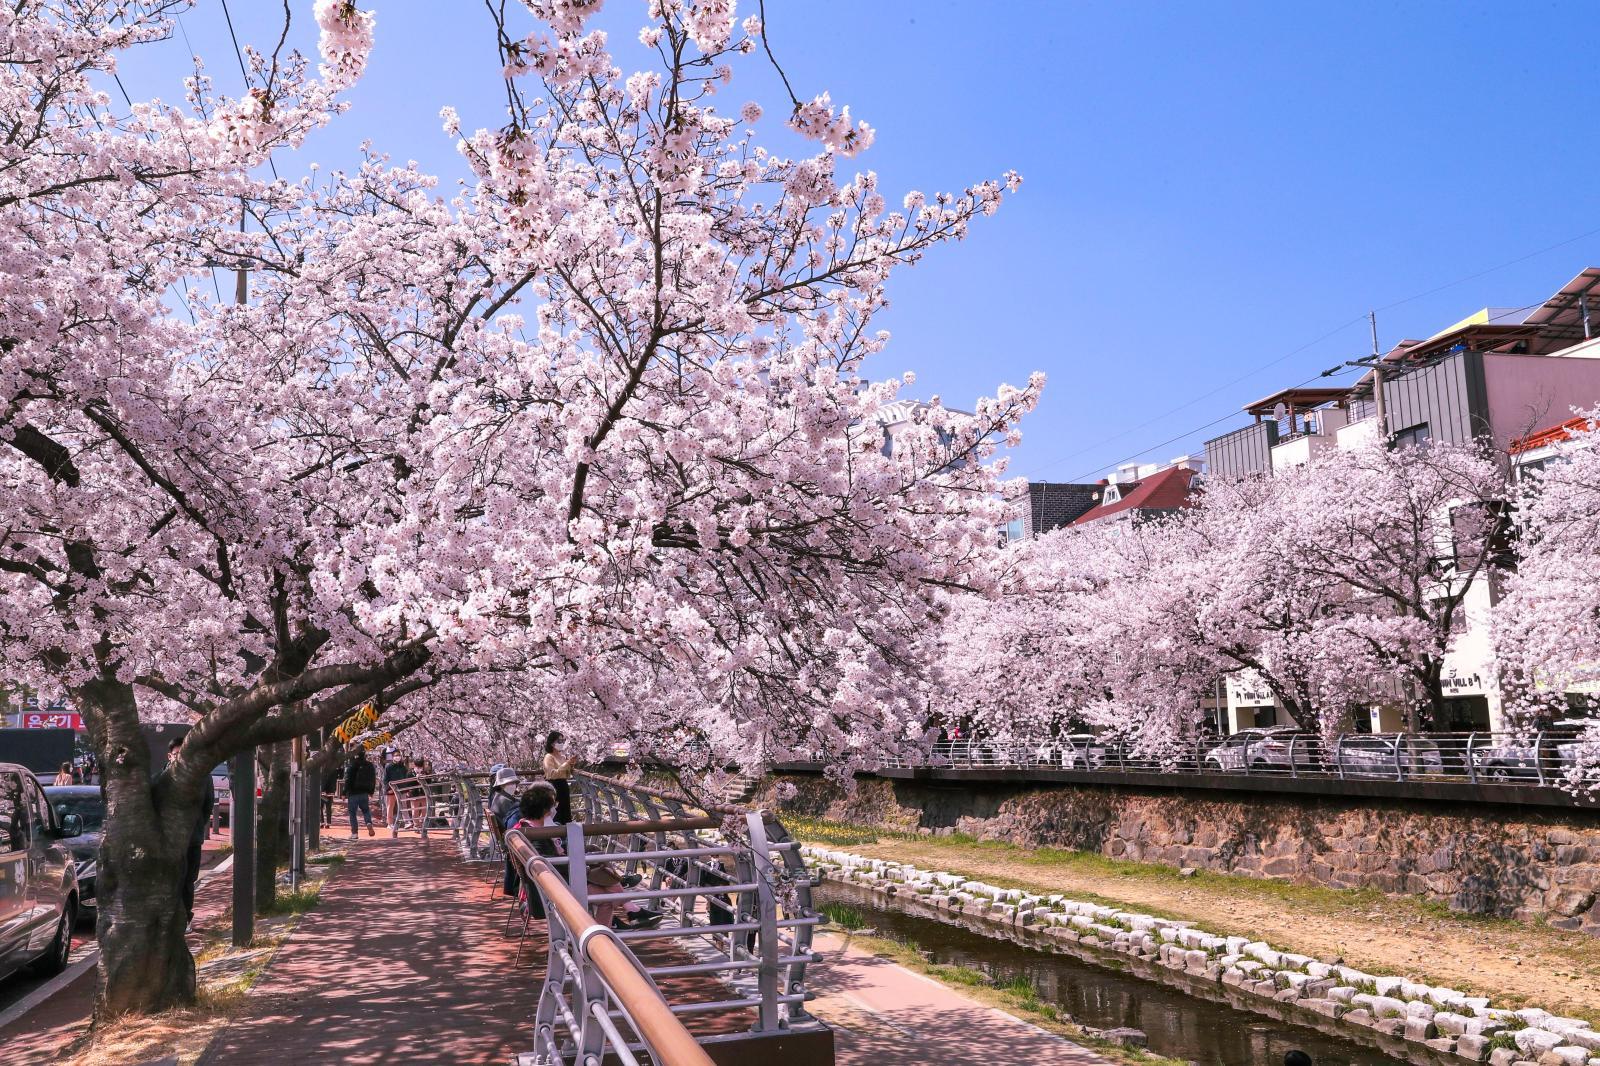 궁거랑 벚꽃길 - 울남9경 의 사진